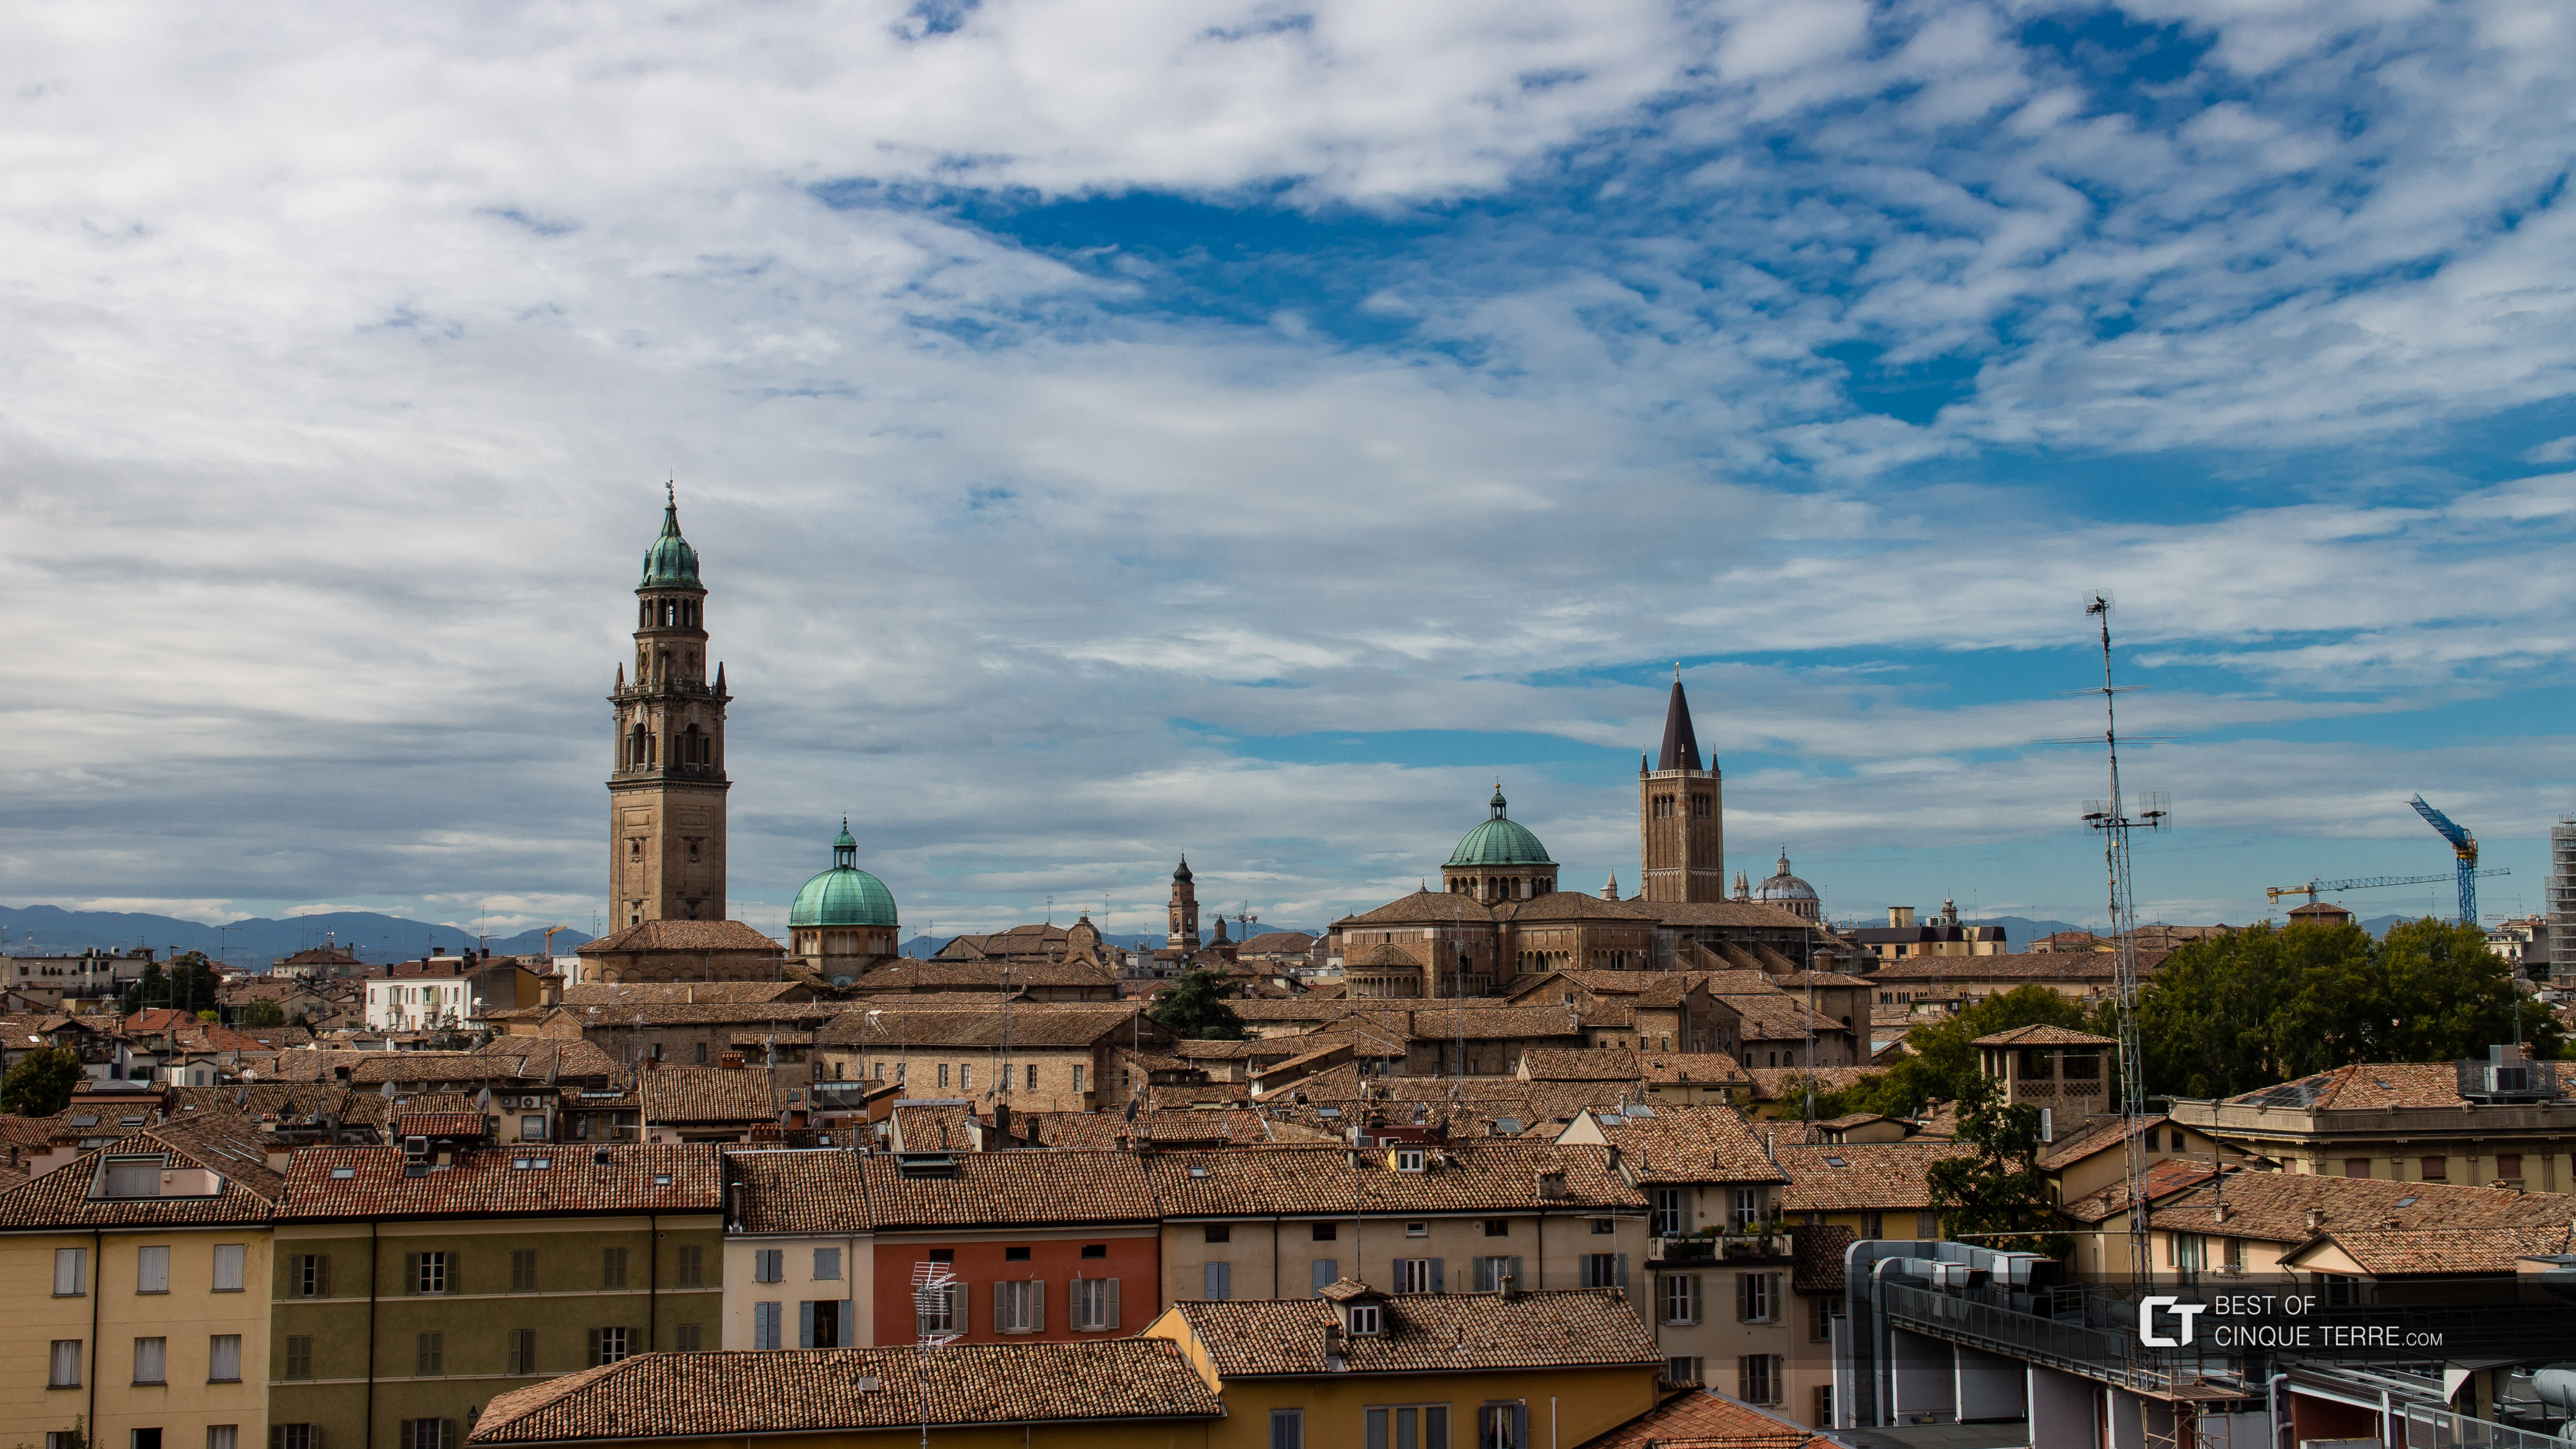 Dachy budynków w historycznym centrum miasta, Parma, Włochy